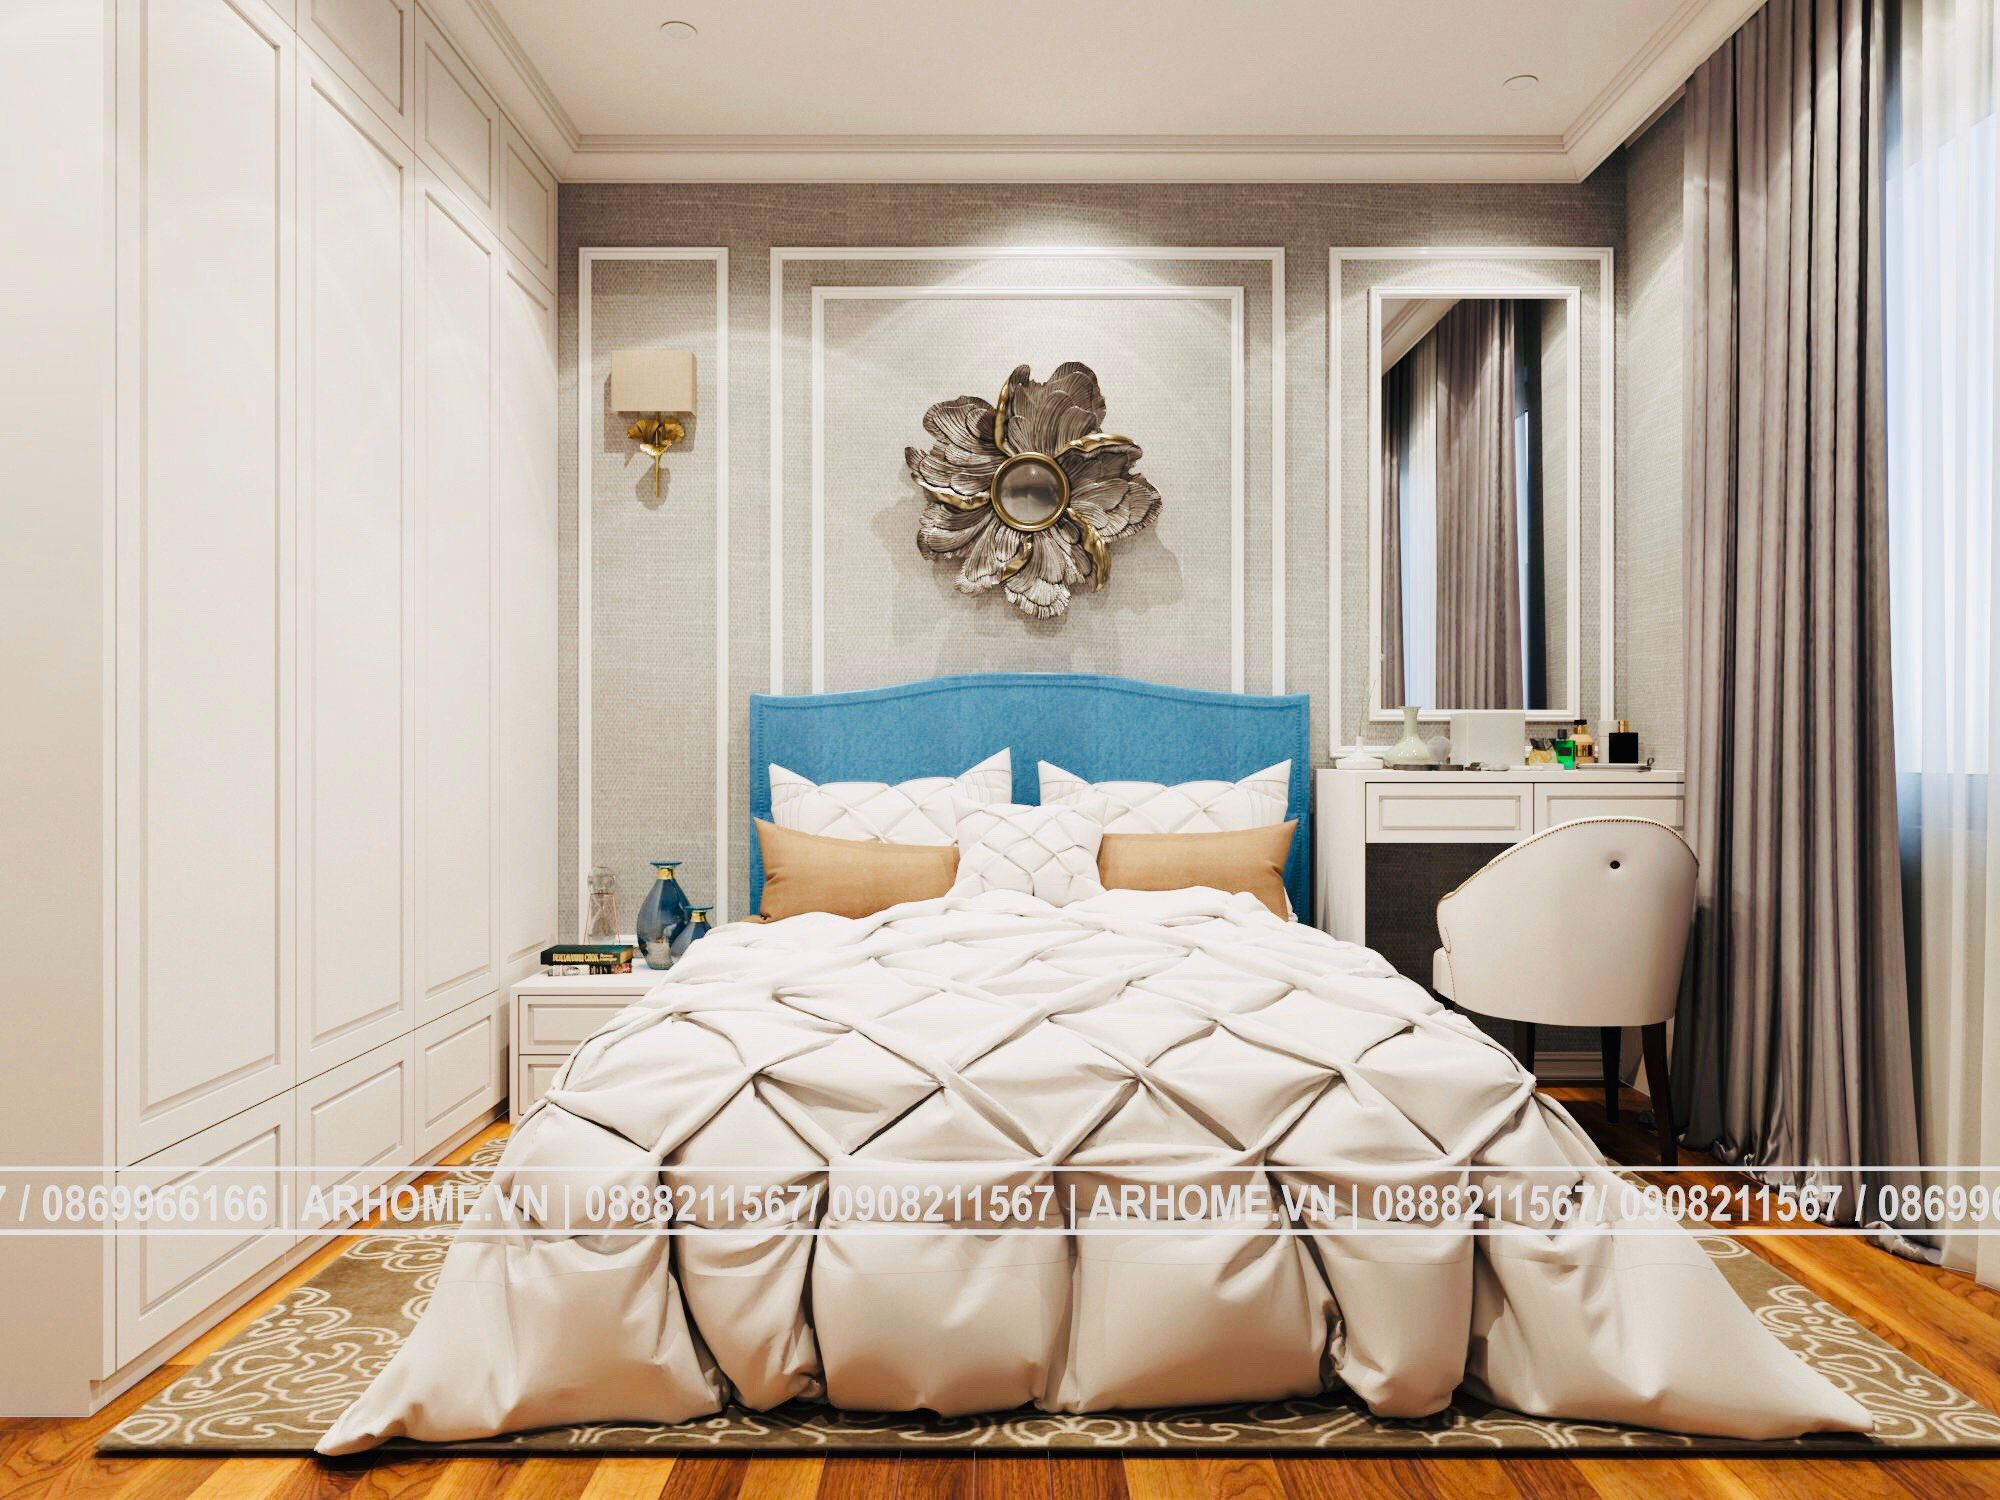 Thiết kế nội thất Chung Cư tại Hà Nội Đẹp xuất sắc với thiết kế nội thất căn hộ 2 phòng ngủ CT1A, CT1B Iris Garden Tân Cổ Điển 1607763370 2